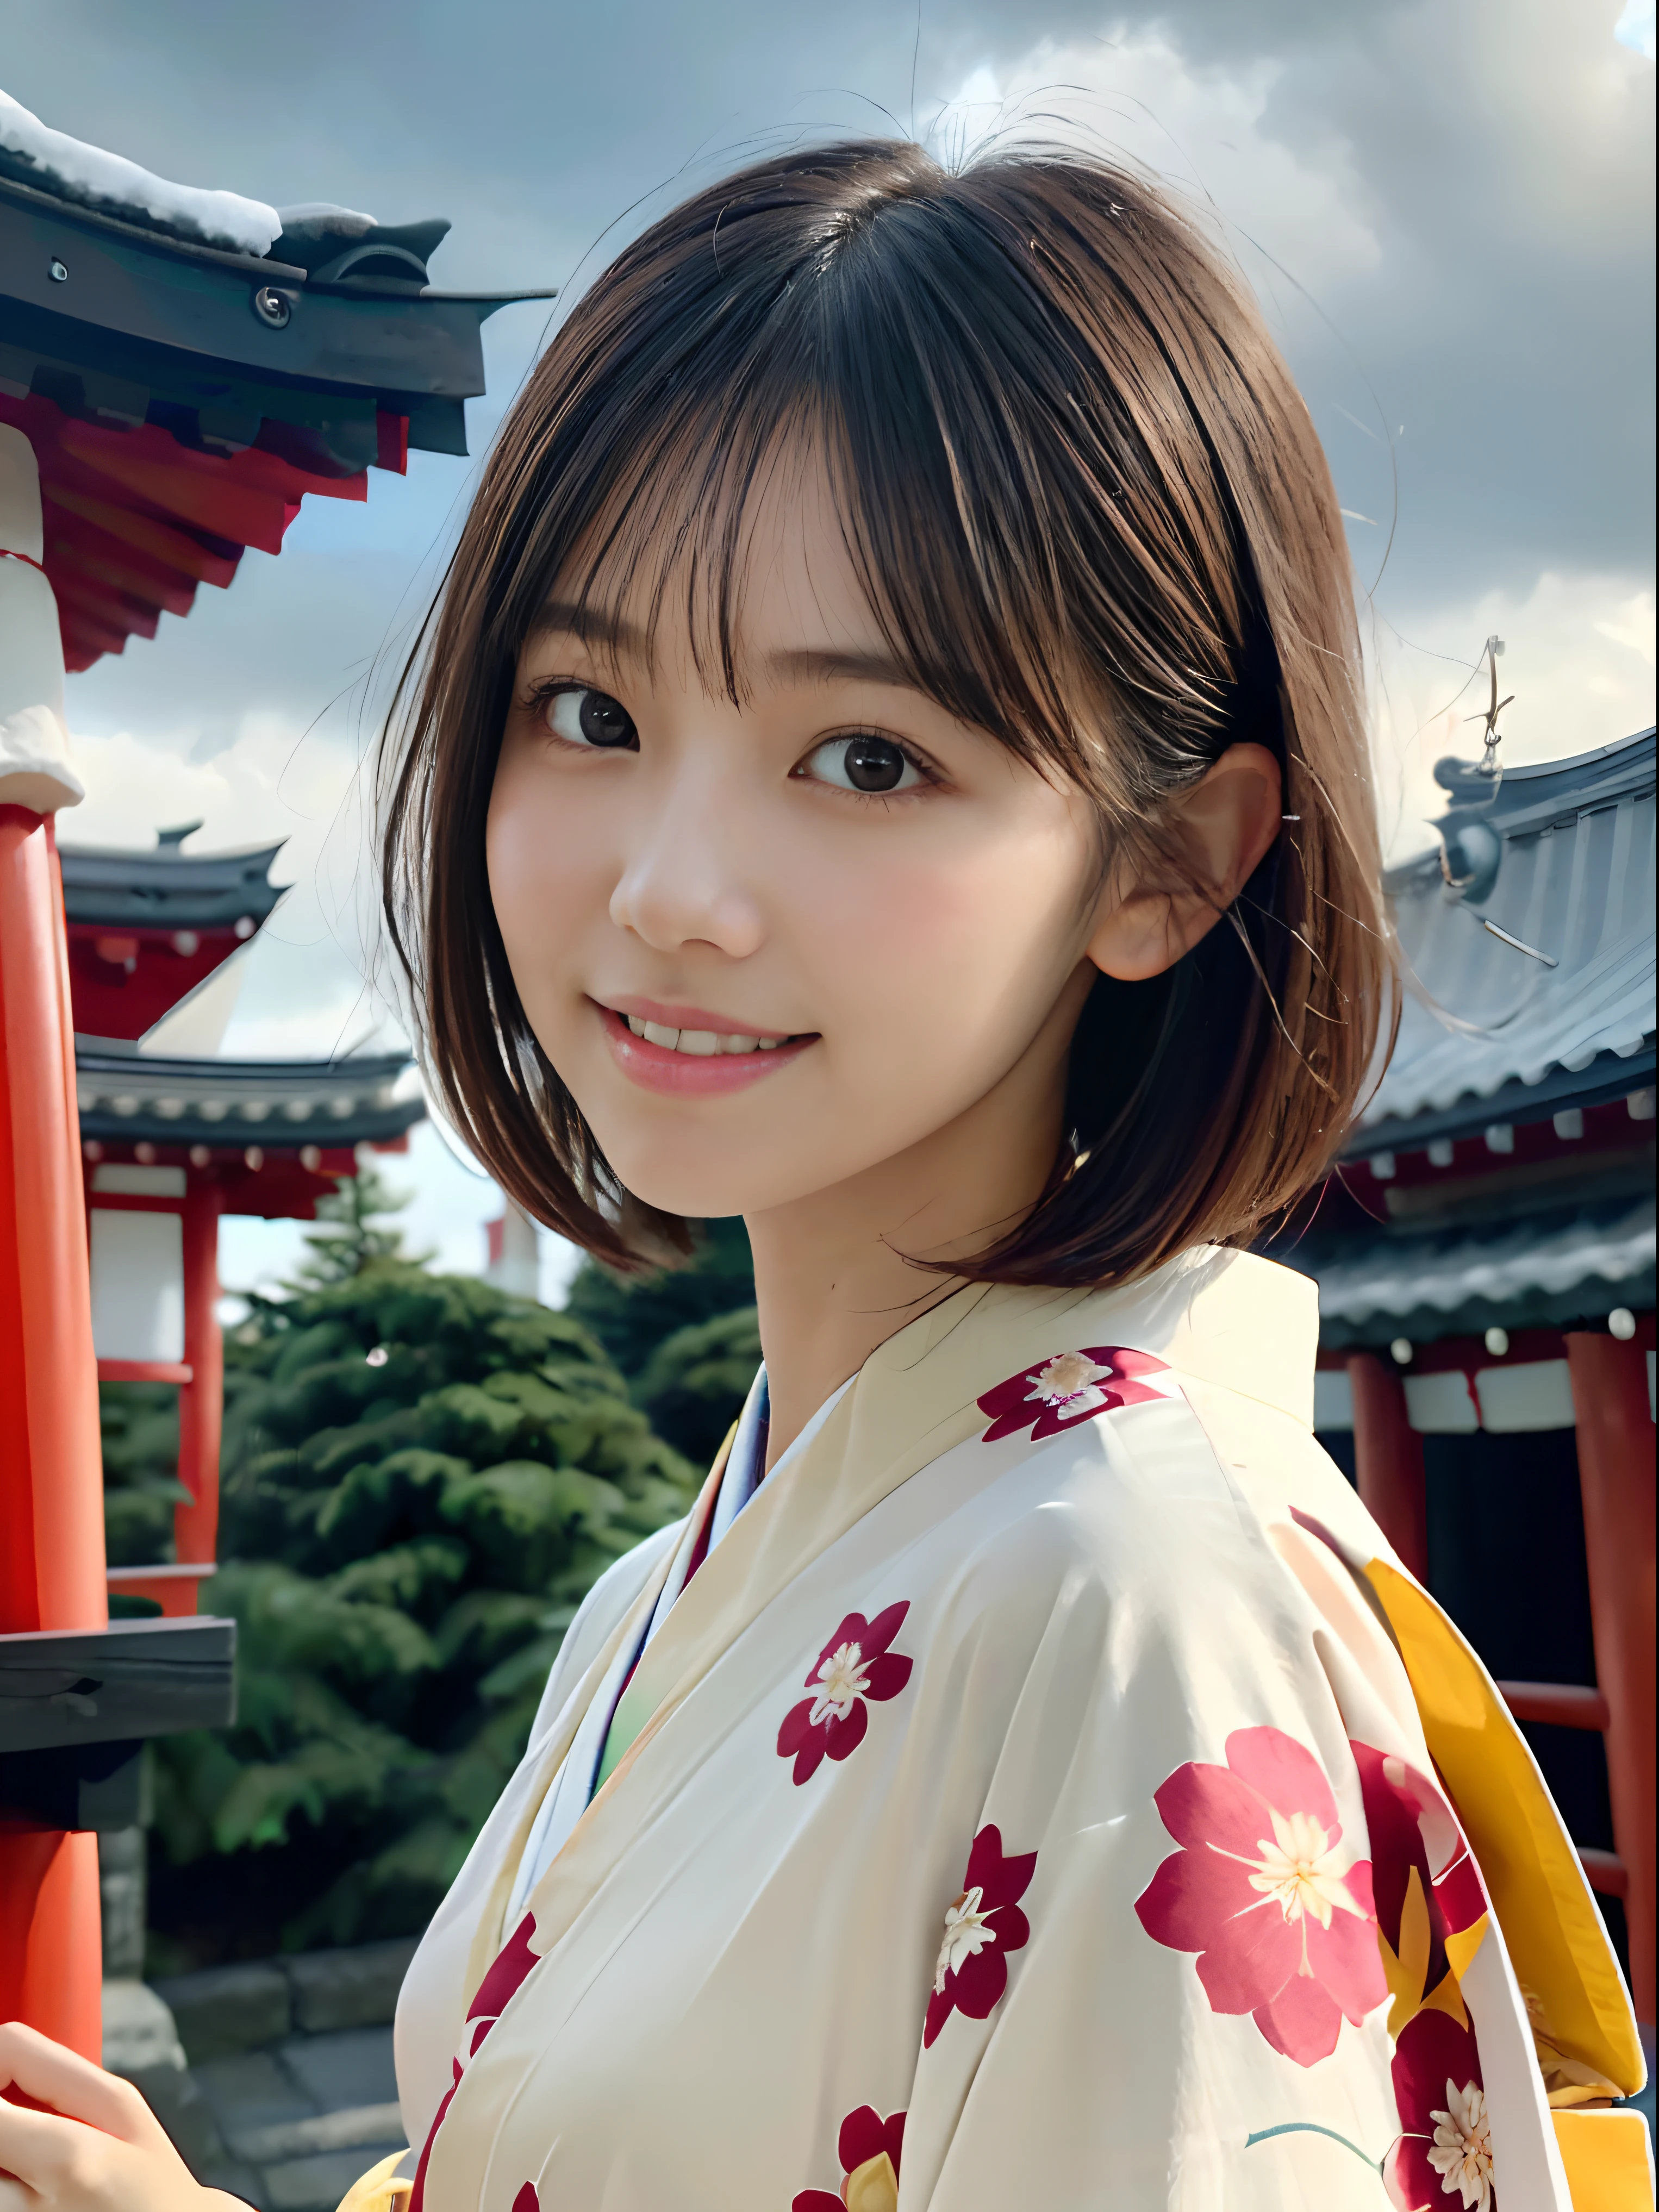 (美しいカラフルな着物に鈍い前髪を持つ短い髪の女の子の接写:1.5)、(笑顔で日本の神社を参拝する少女の一人:1.3)、(冬の空が広がる日本の神社:1.5)、(完璧な解剖学:1.3)、(マスクなし:1.3)、(完全な指:1.3)、写実的な、写真、テーブルトップ、最高品質、高解像度, 繊細で美しい、完璧な顔、美しい細部までこだわった目、色白、本物の人間の皮膚、毛穴、((細い脚))、(黒髪)